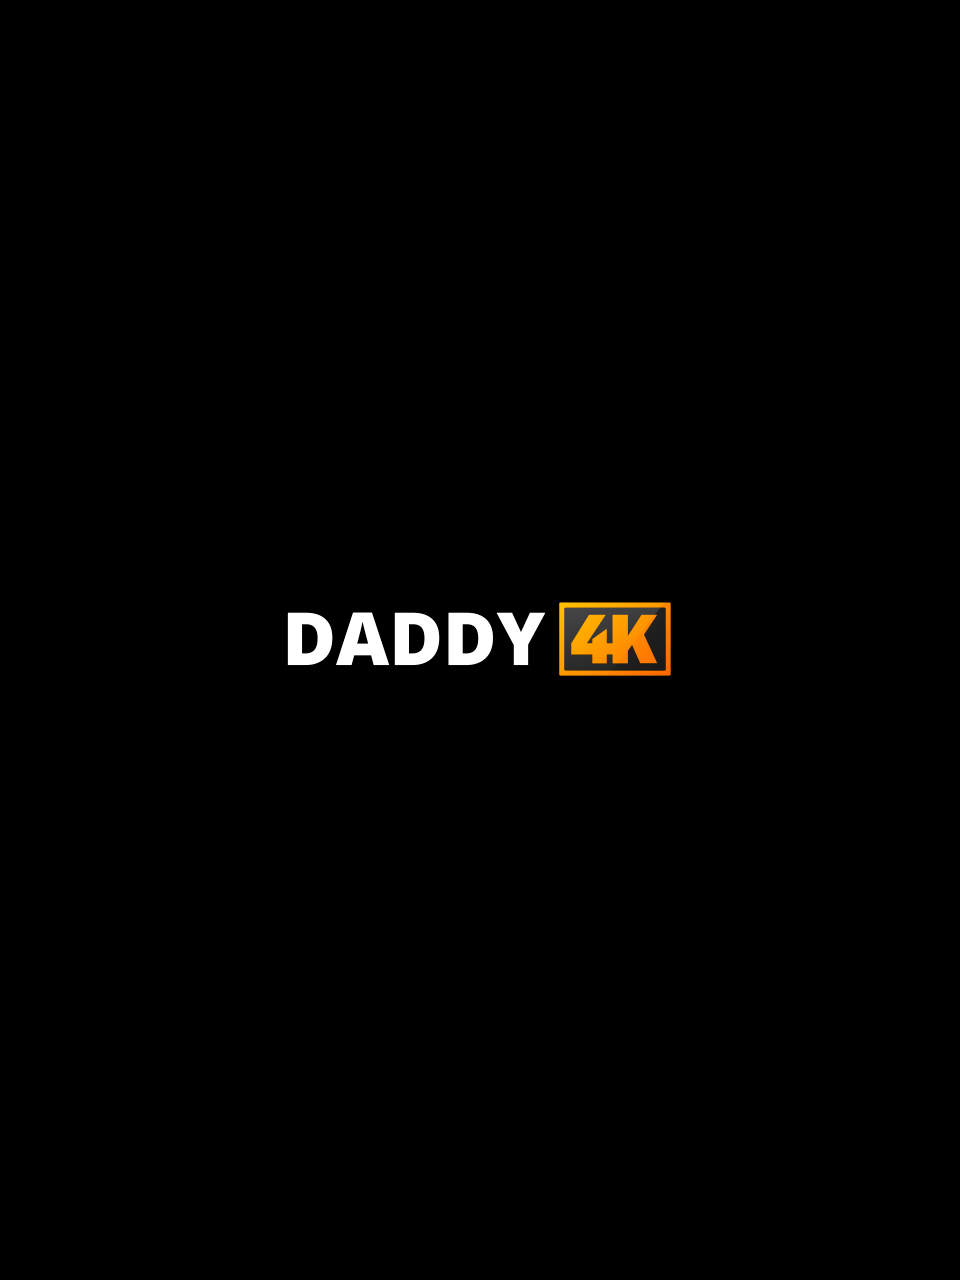 Daddy4K